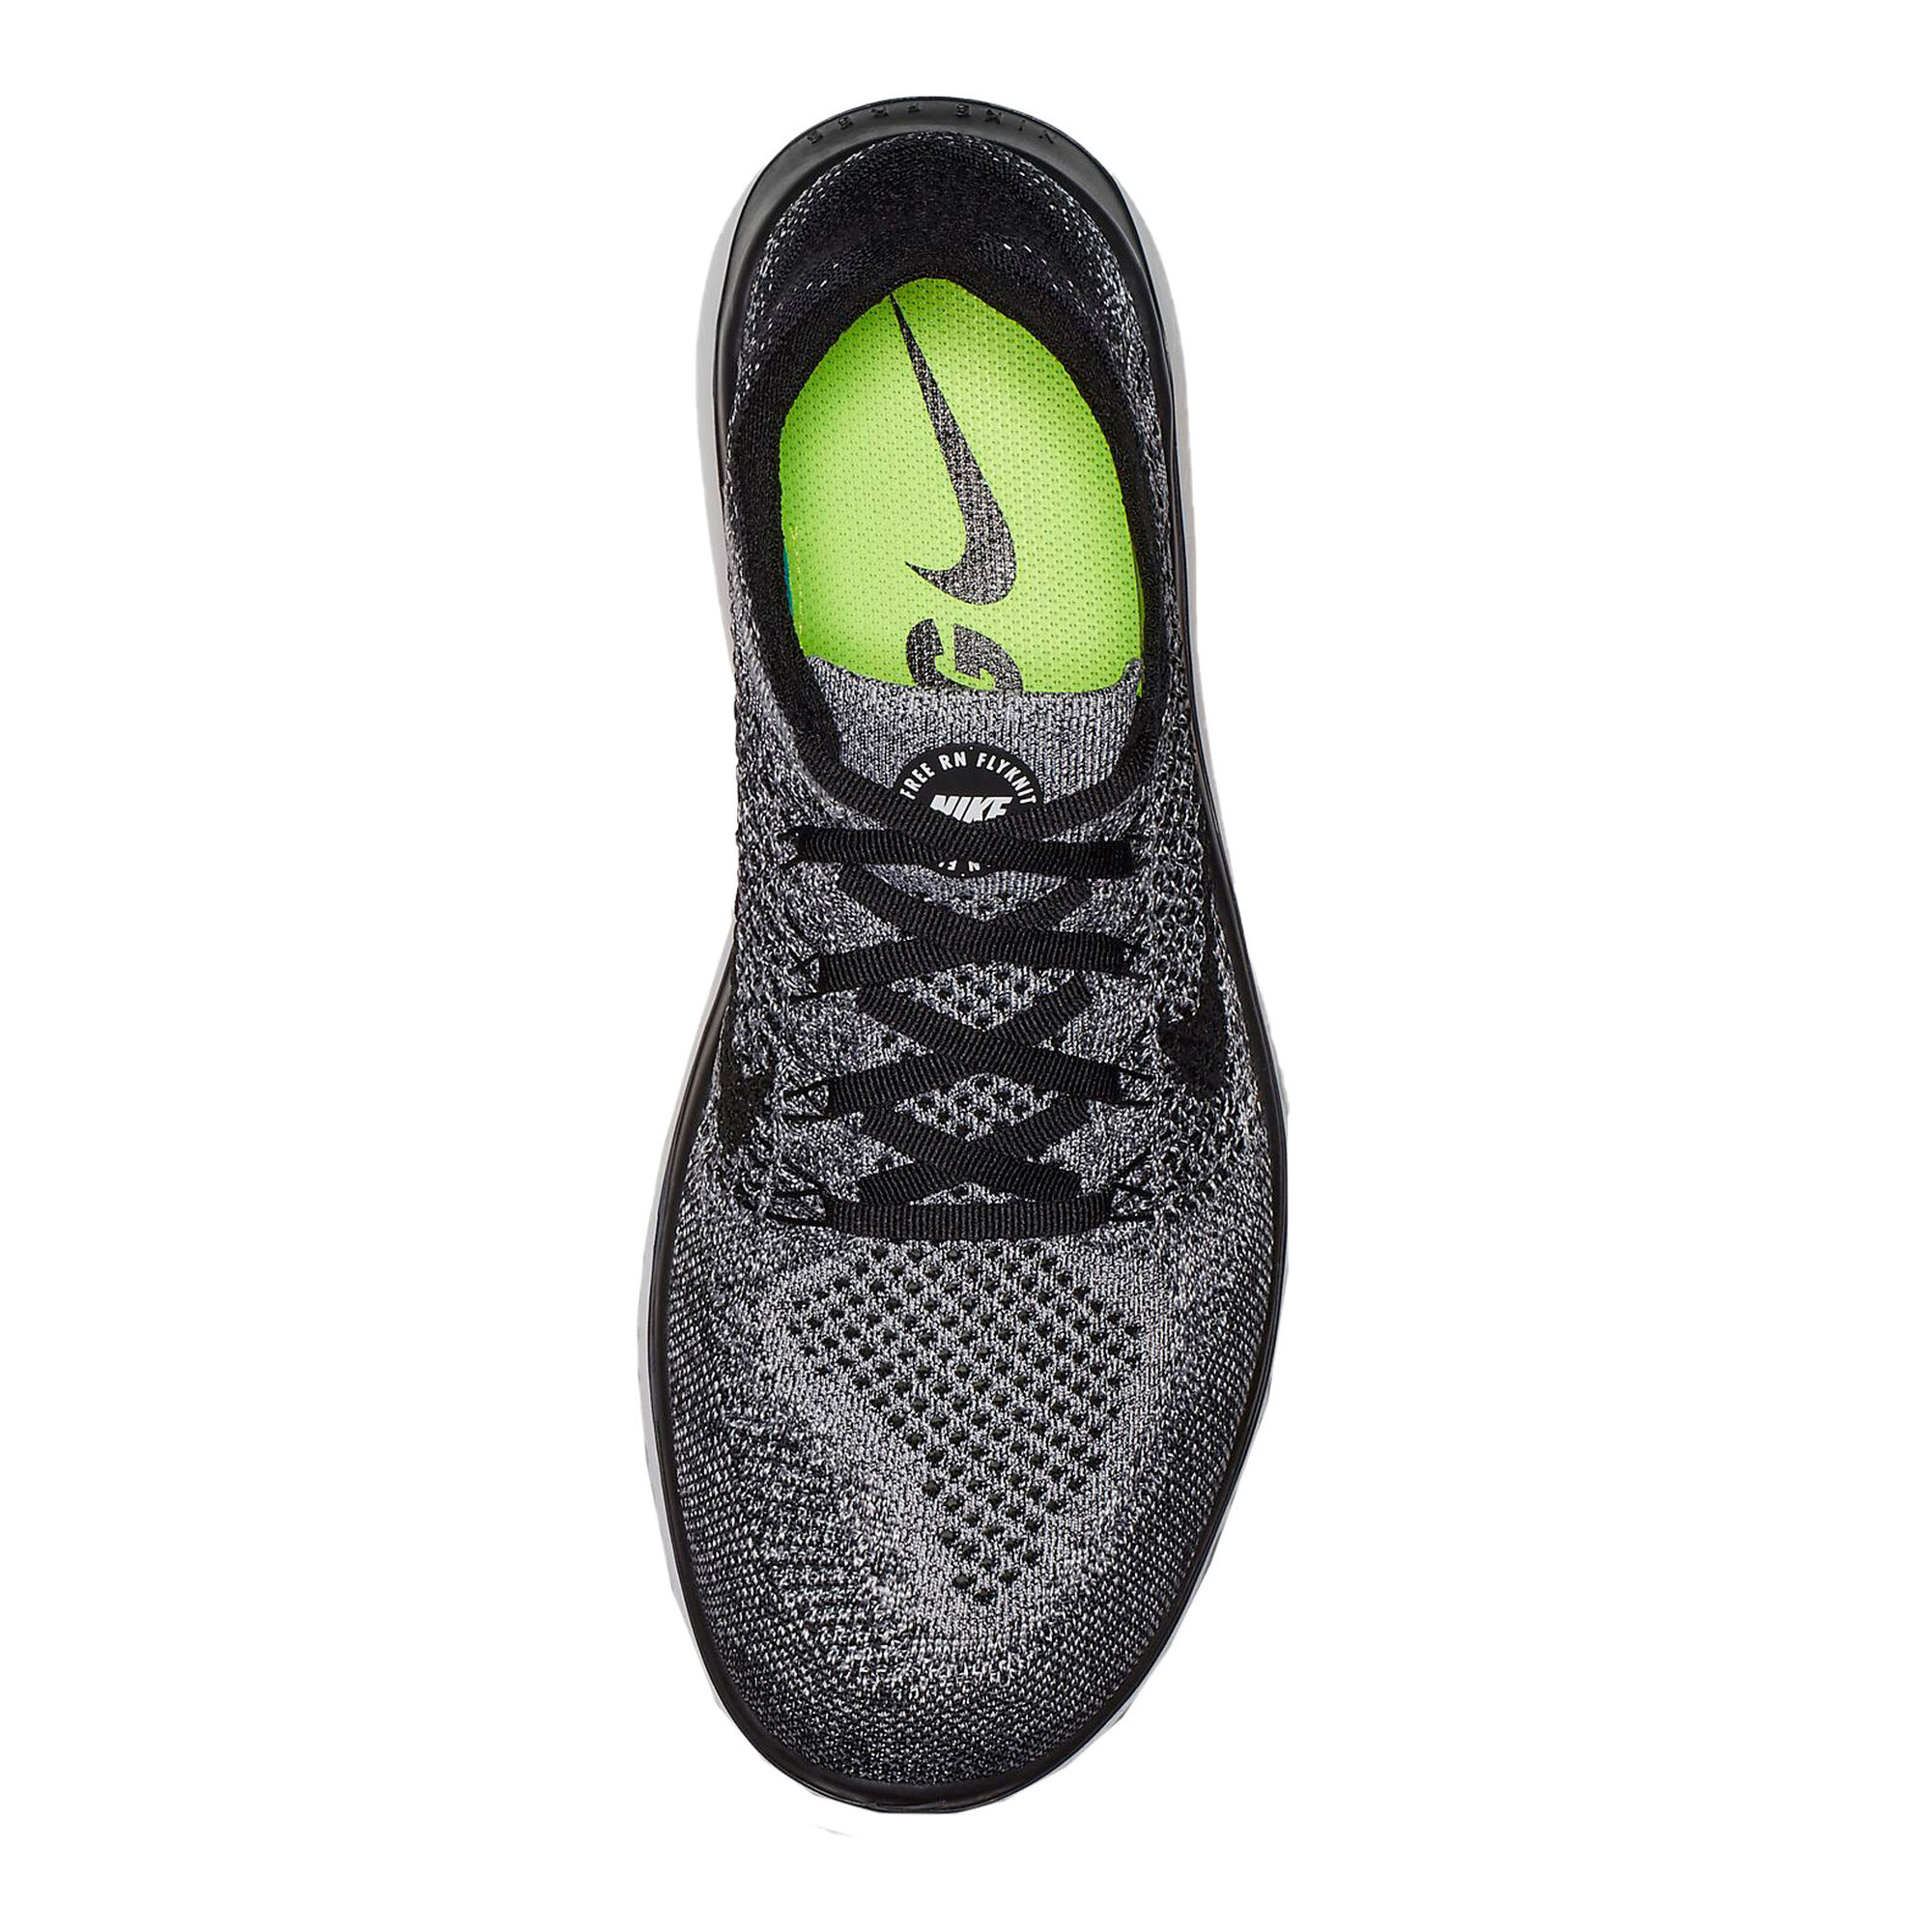 Formulering Mitt Uitsteken buy Nike Free Run Flyknit 2018 Fitness Shoe Men - White, Black online |  Tennis-Point